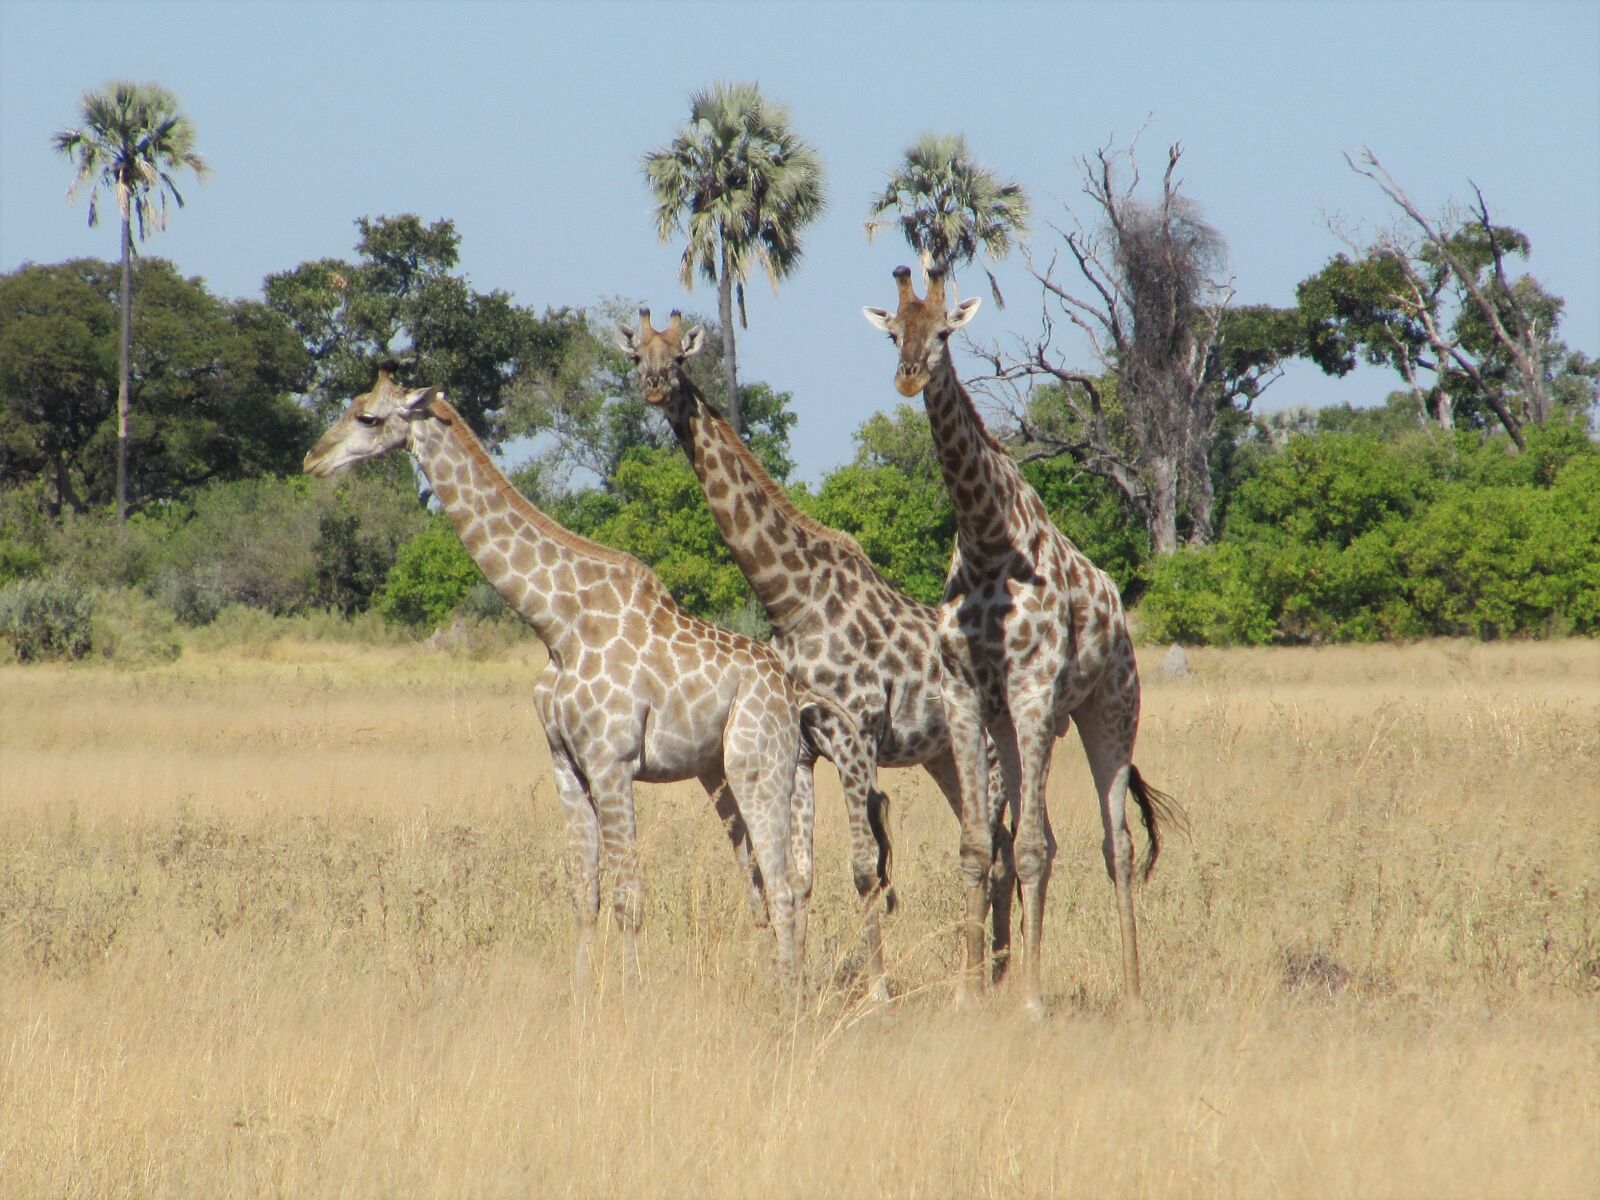 Canon PowerShot SX200 IS sample photo. Giraffe, giraffes, botswana photography